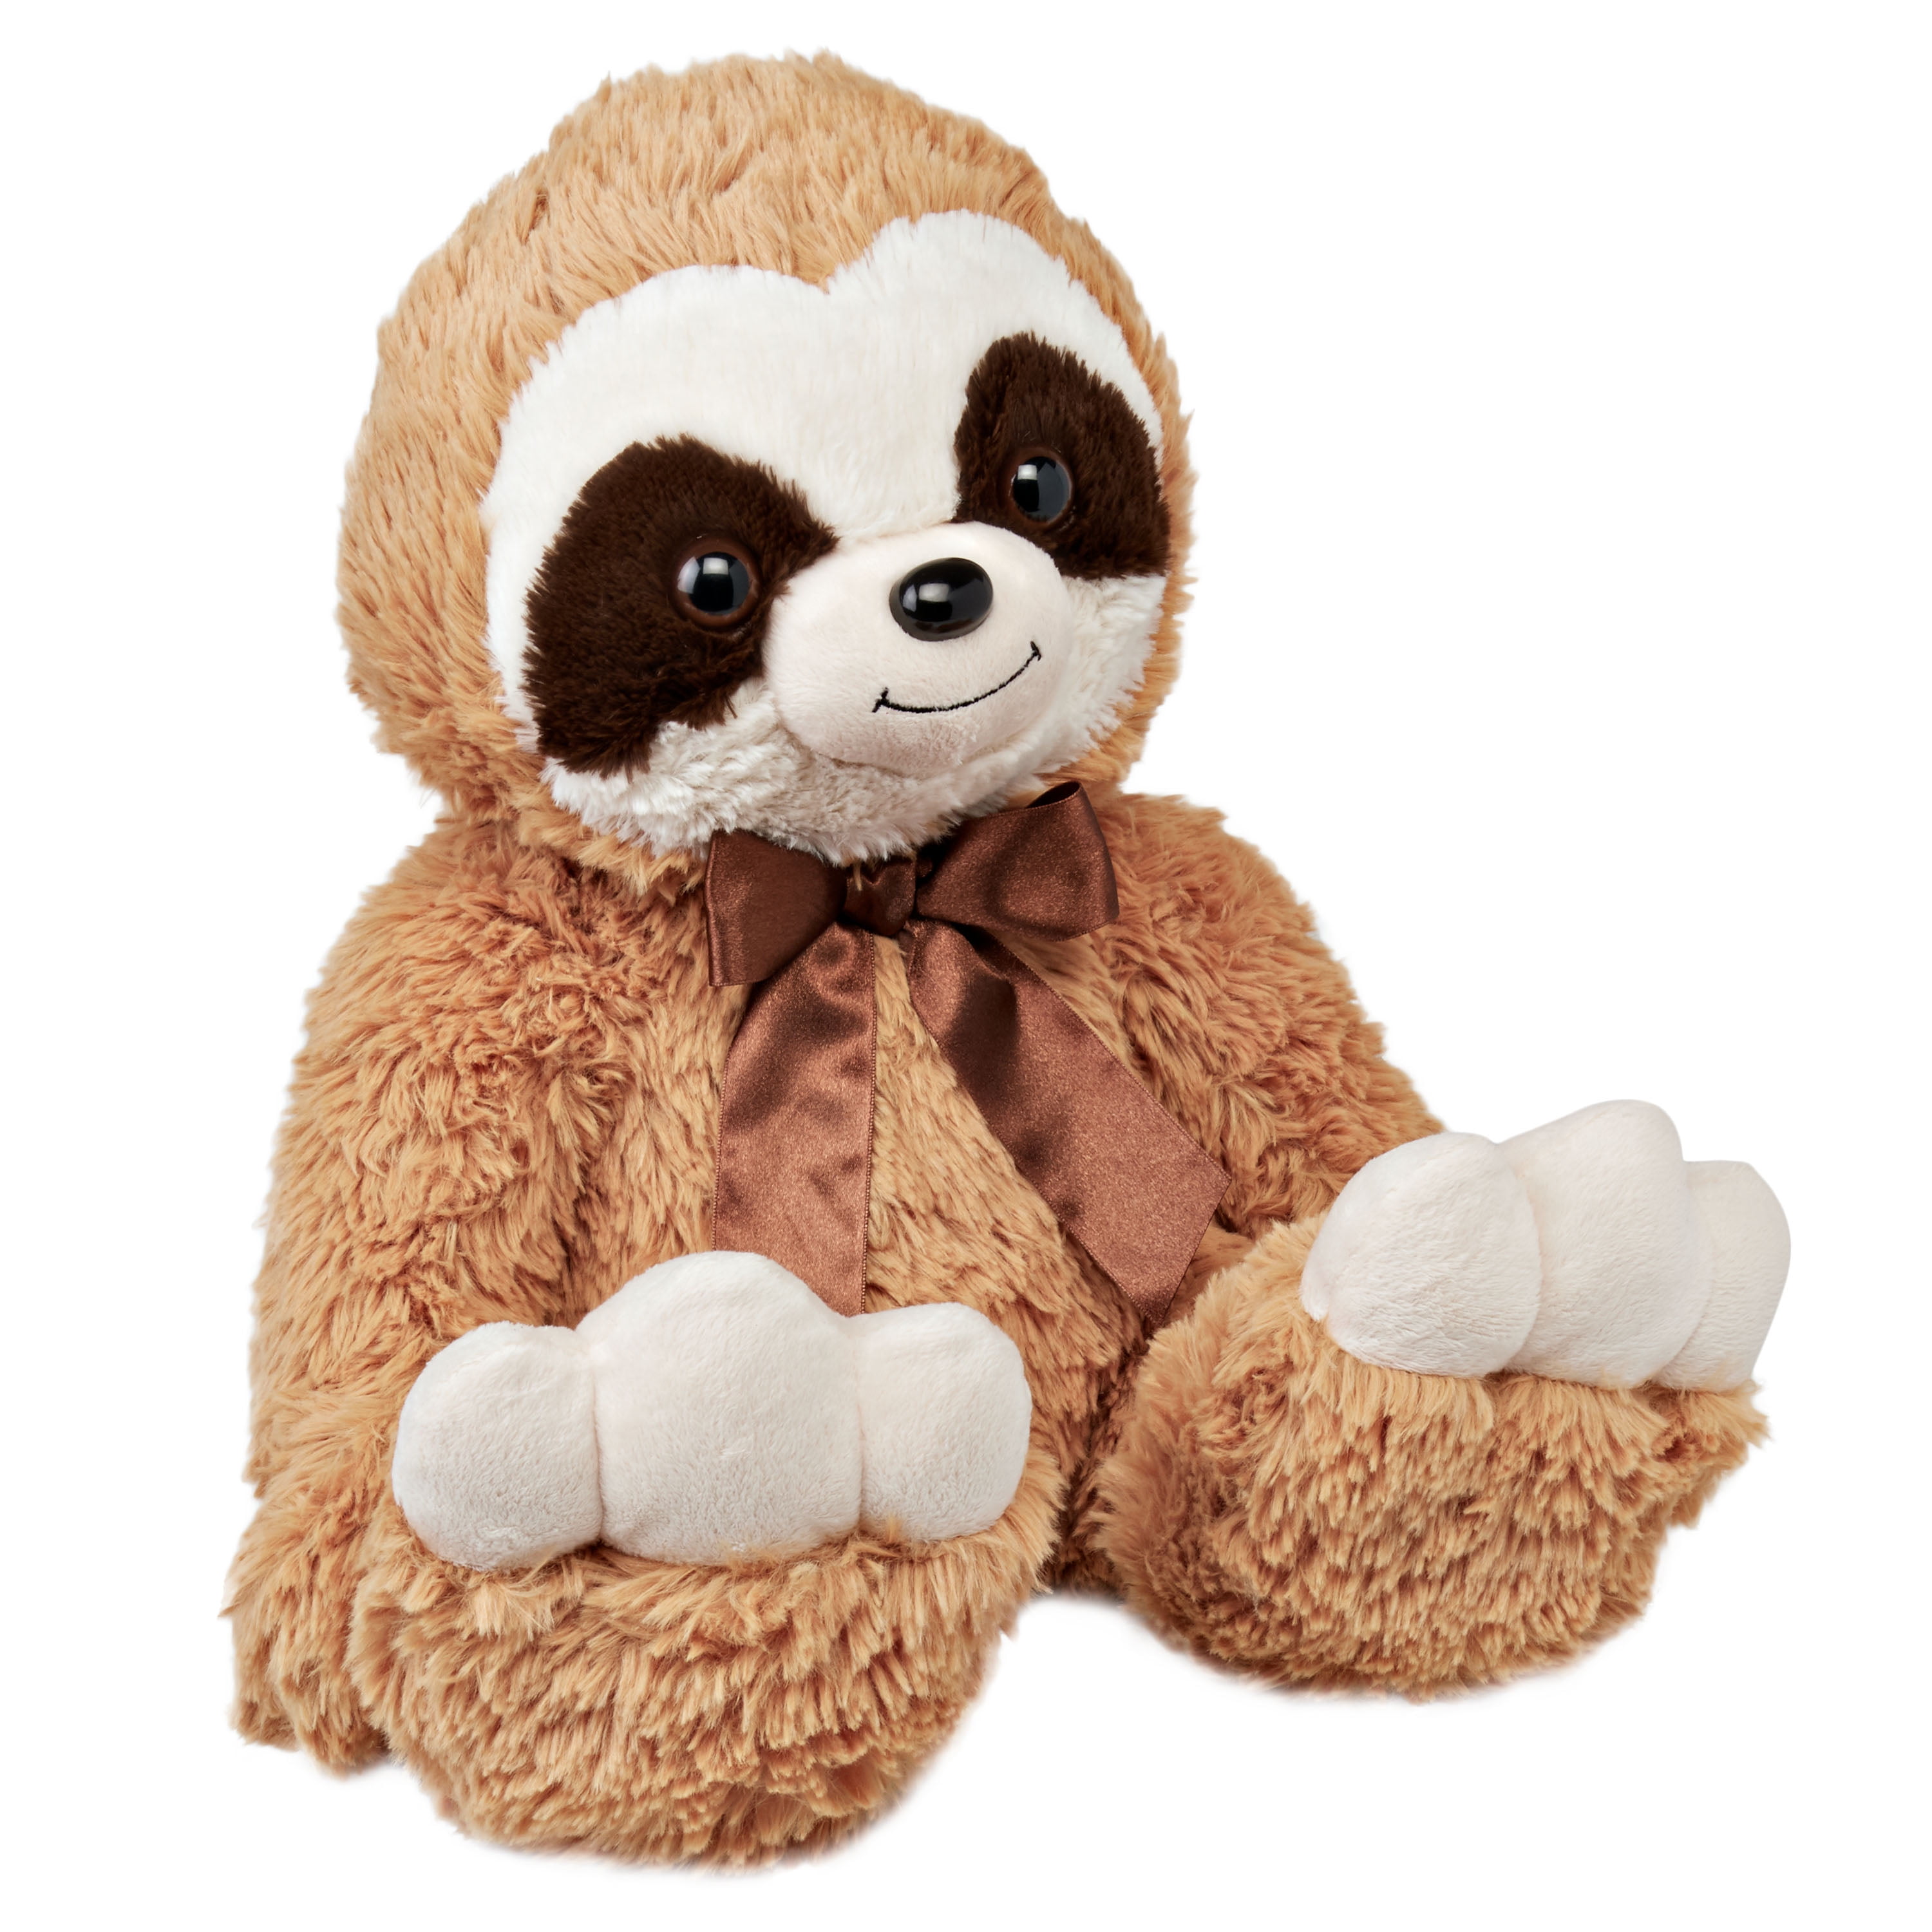 giant sloth stuffed animal walmart